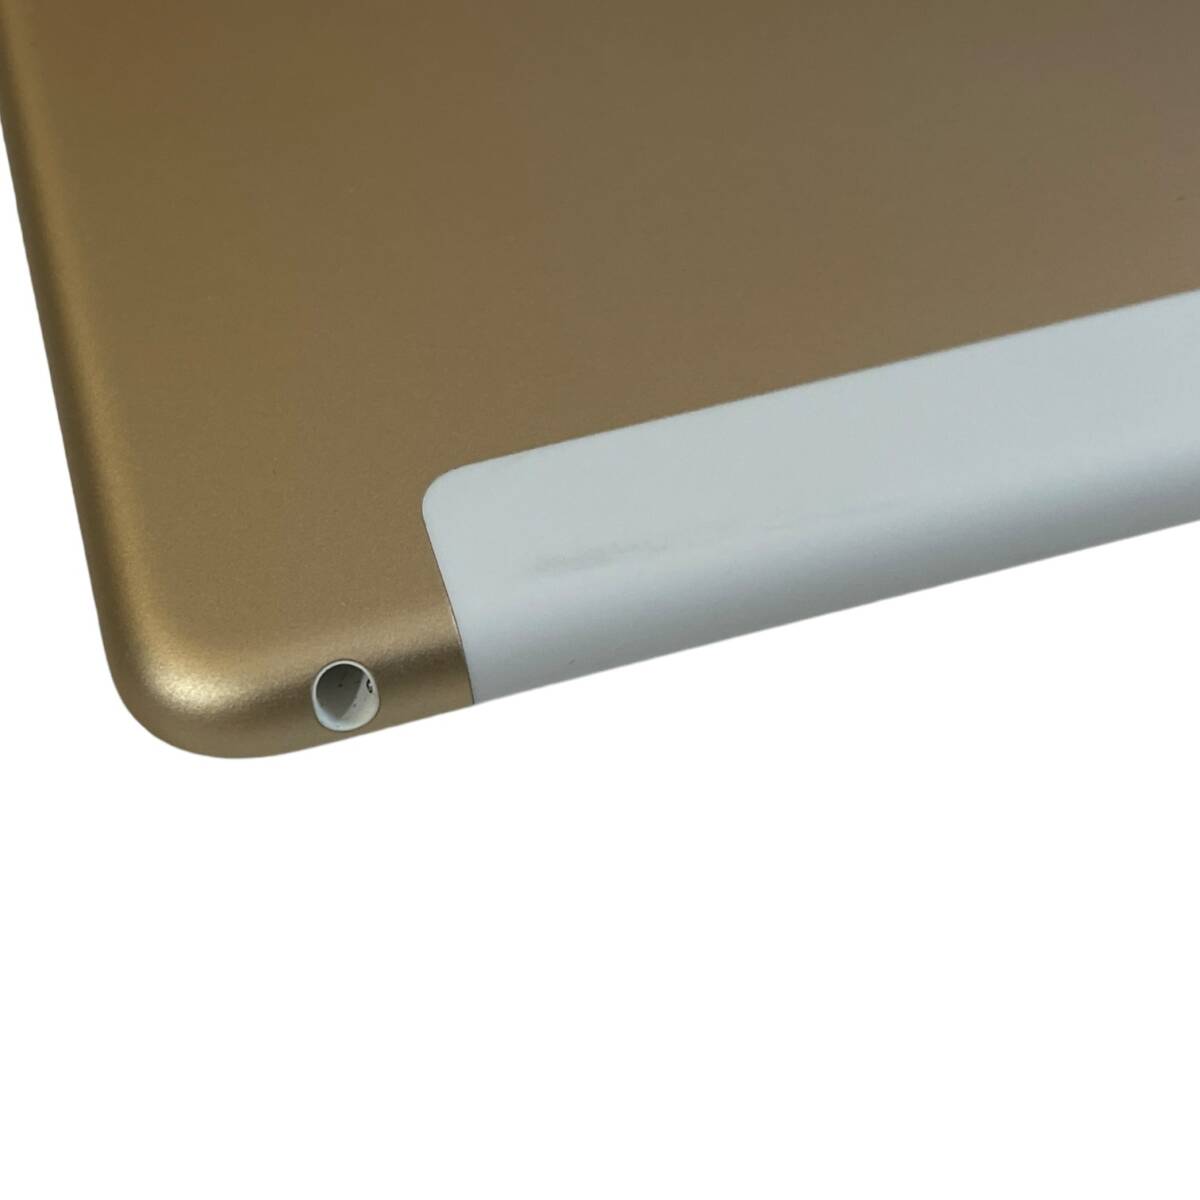 【中古品】初期化済 Apple iPad mini4 ゴールド 16GB MK712J/A Wi-Fi+Cellular SIMフリー ソフトバンク 判定:〇 箱無し L64383RLの画像10